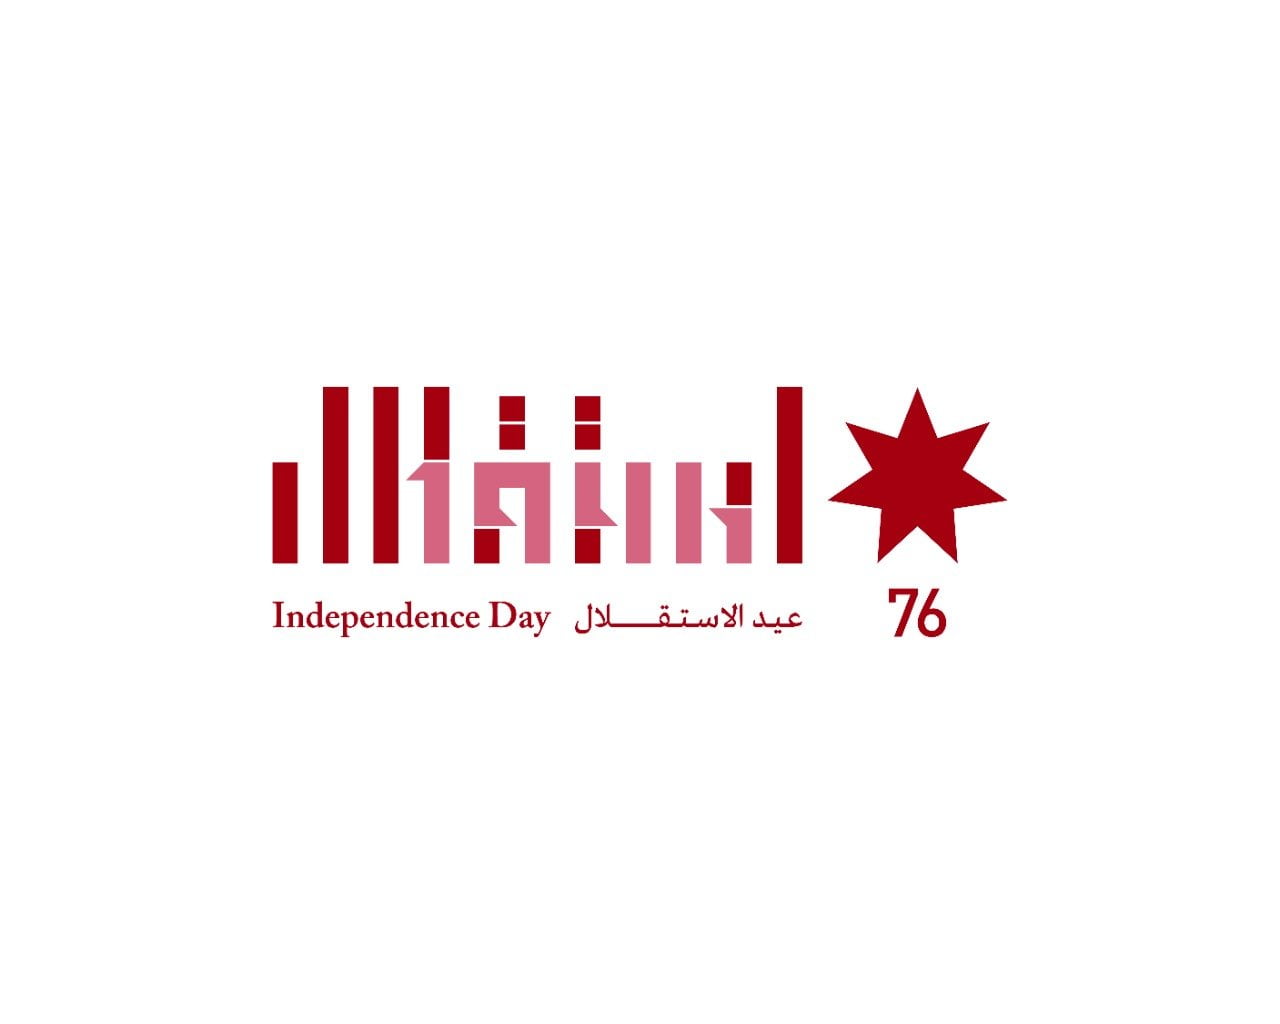 شعار عيد استقلال الاردن ال 76 جاهز للطباعة مميز